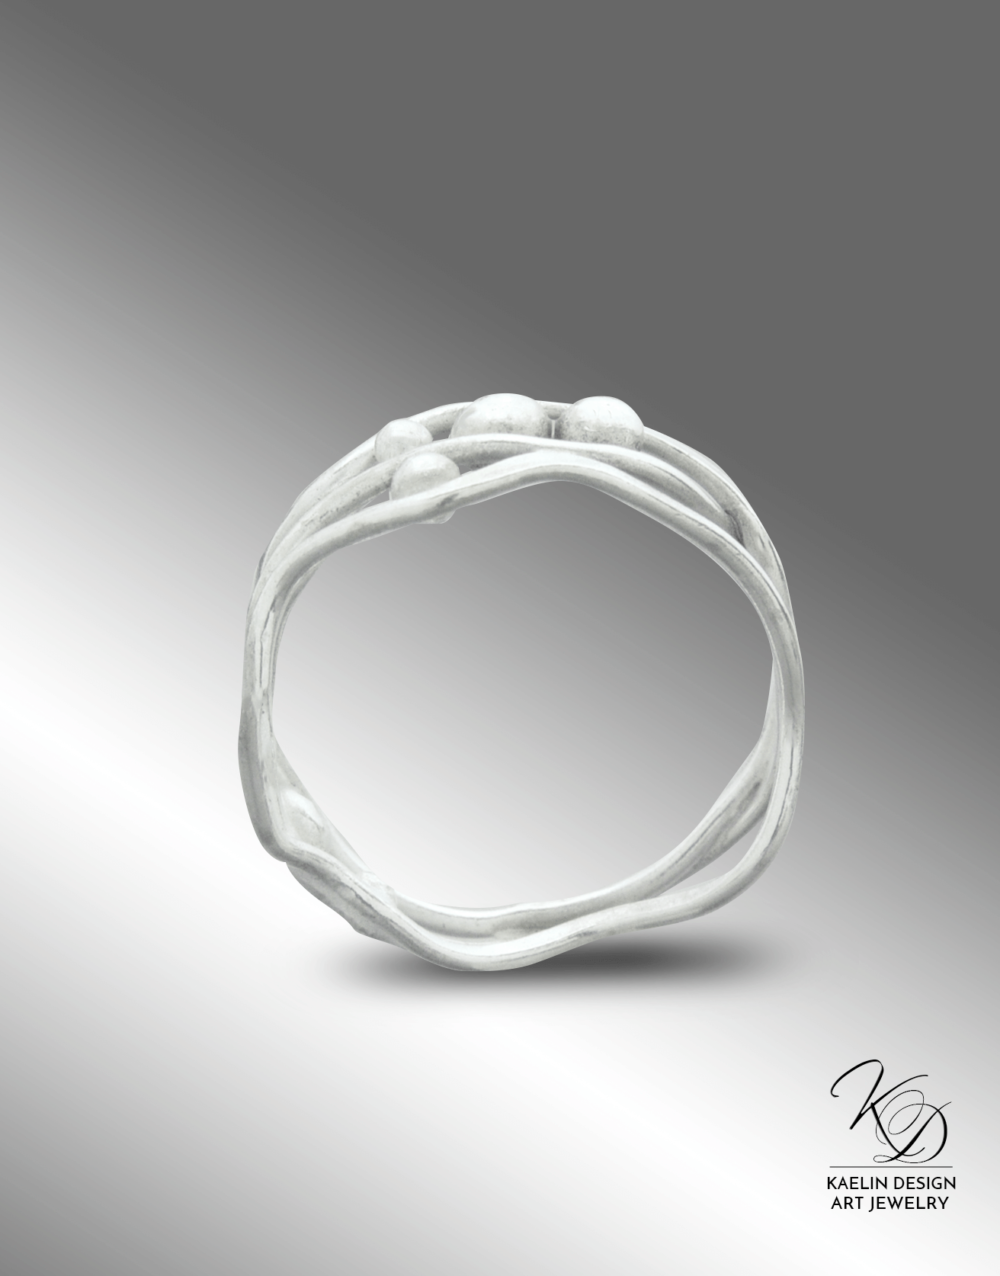 Seafoam Silver Ocean Inspired Ring by Kaelin Design Fine Art Jewelry